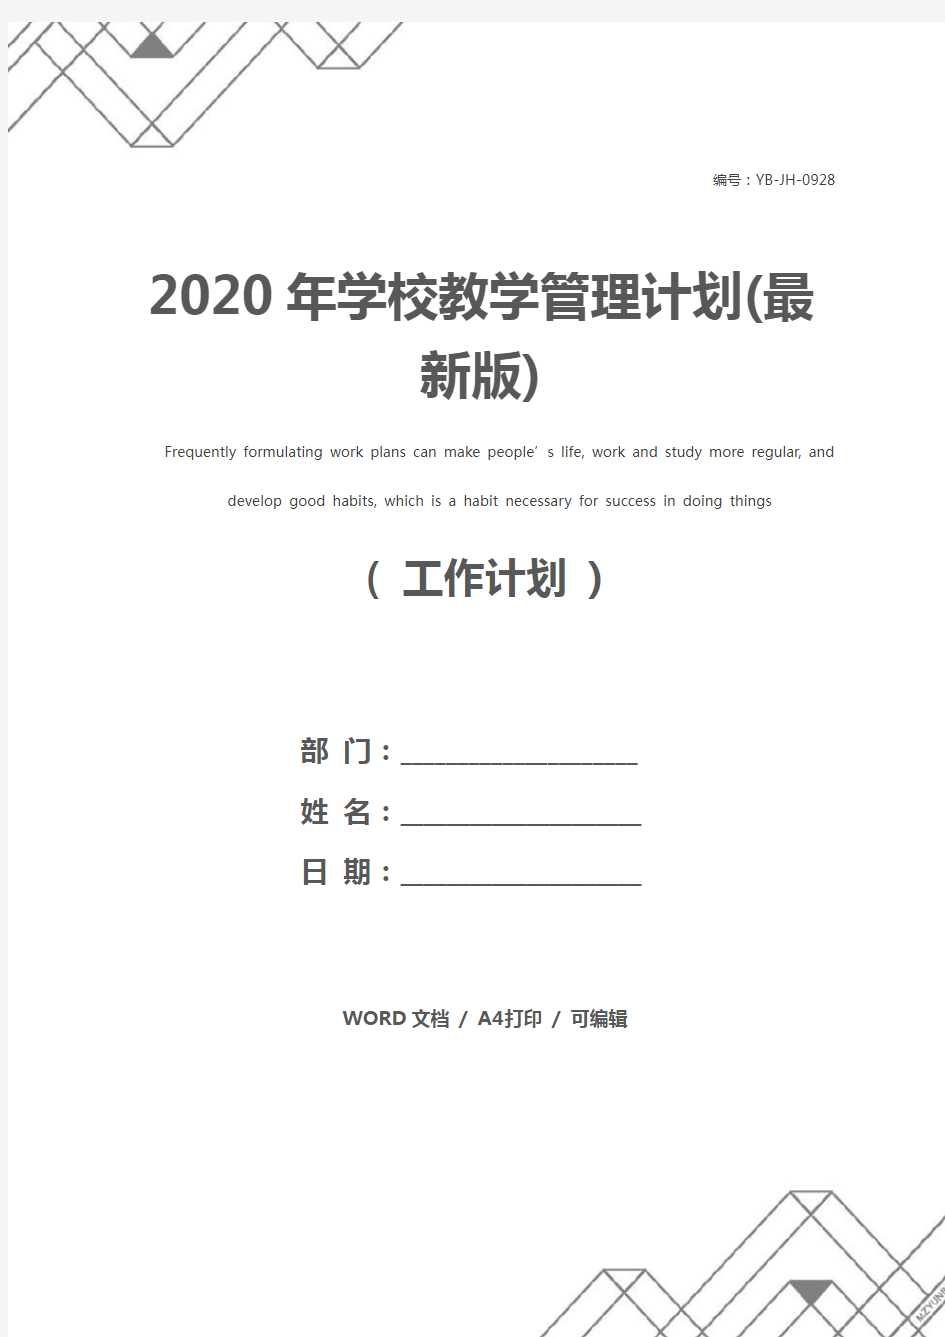 2020年学校教学管理计划(最新版)